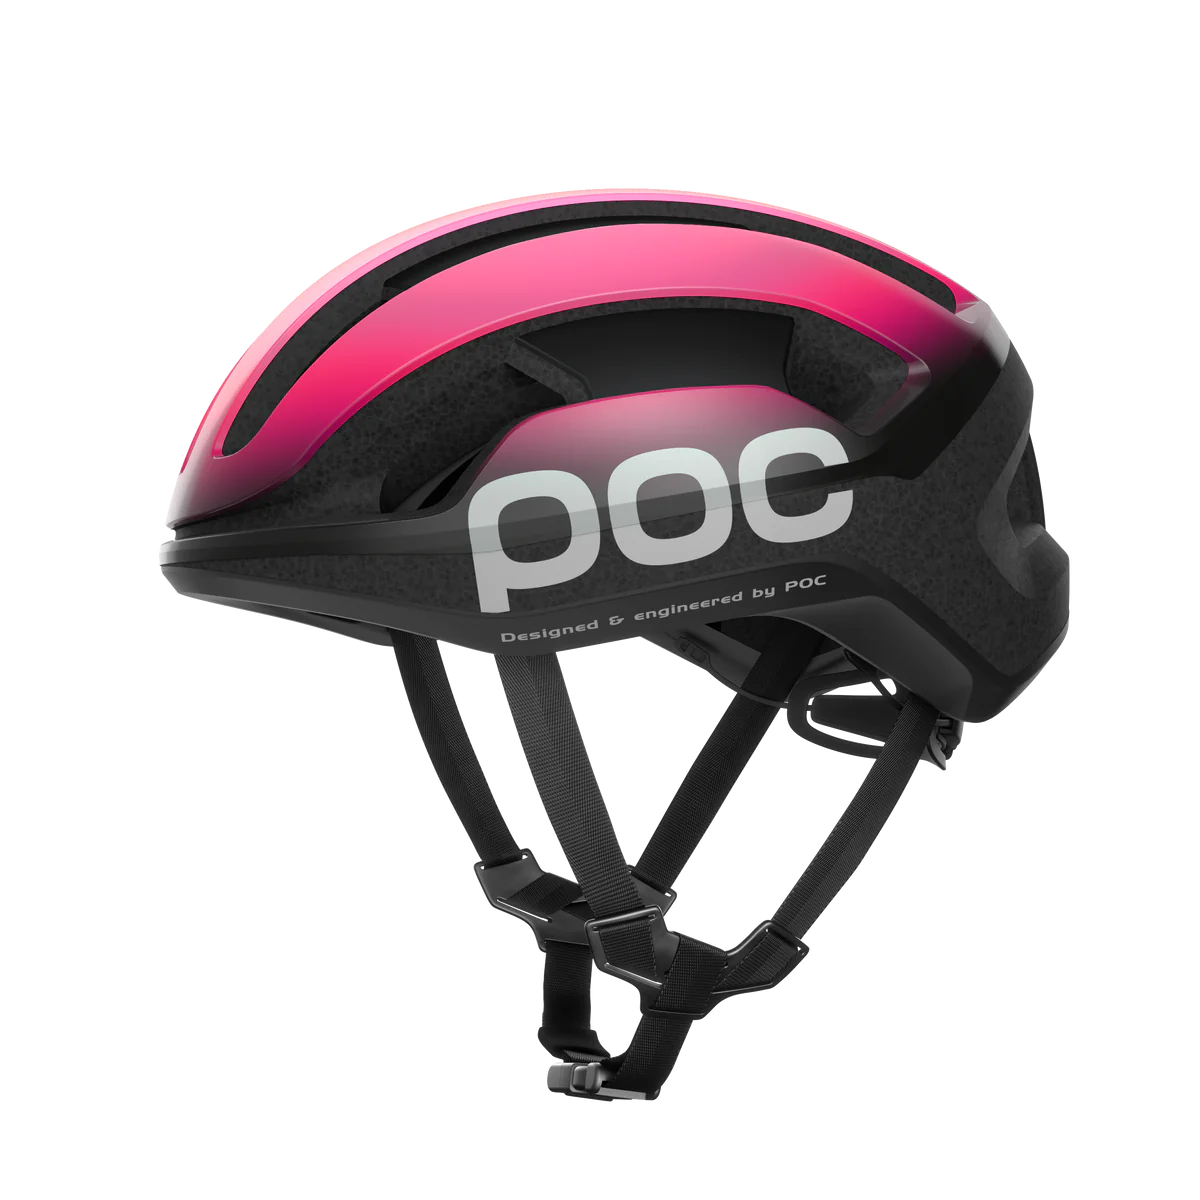 ロードバイク用ヘルメット 10793-8635 オムネライトアジアンフィット Omne Lite Wf - Fluorescent Pink/Uranium Black [ユニセックス]